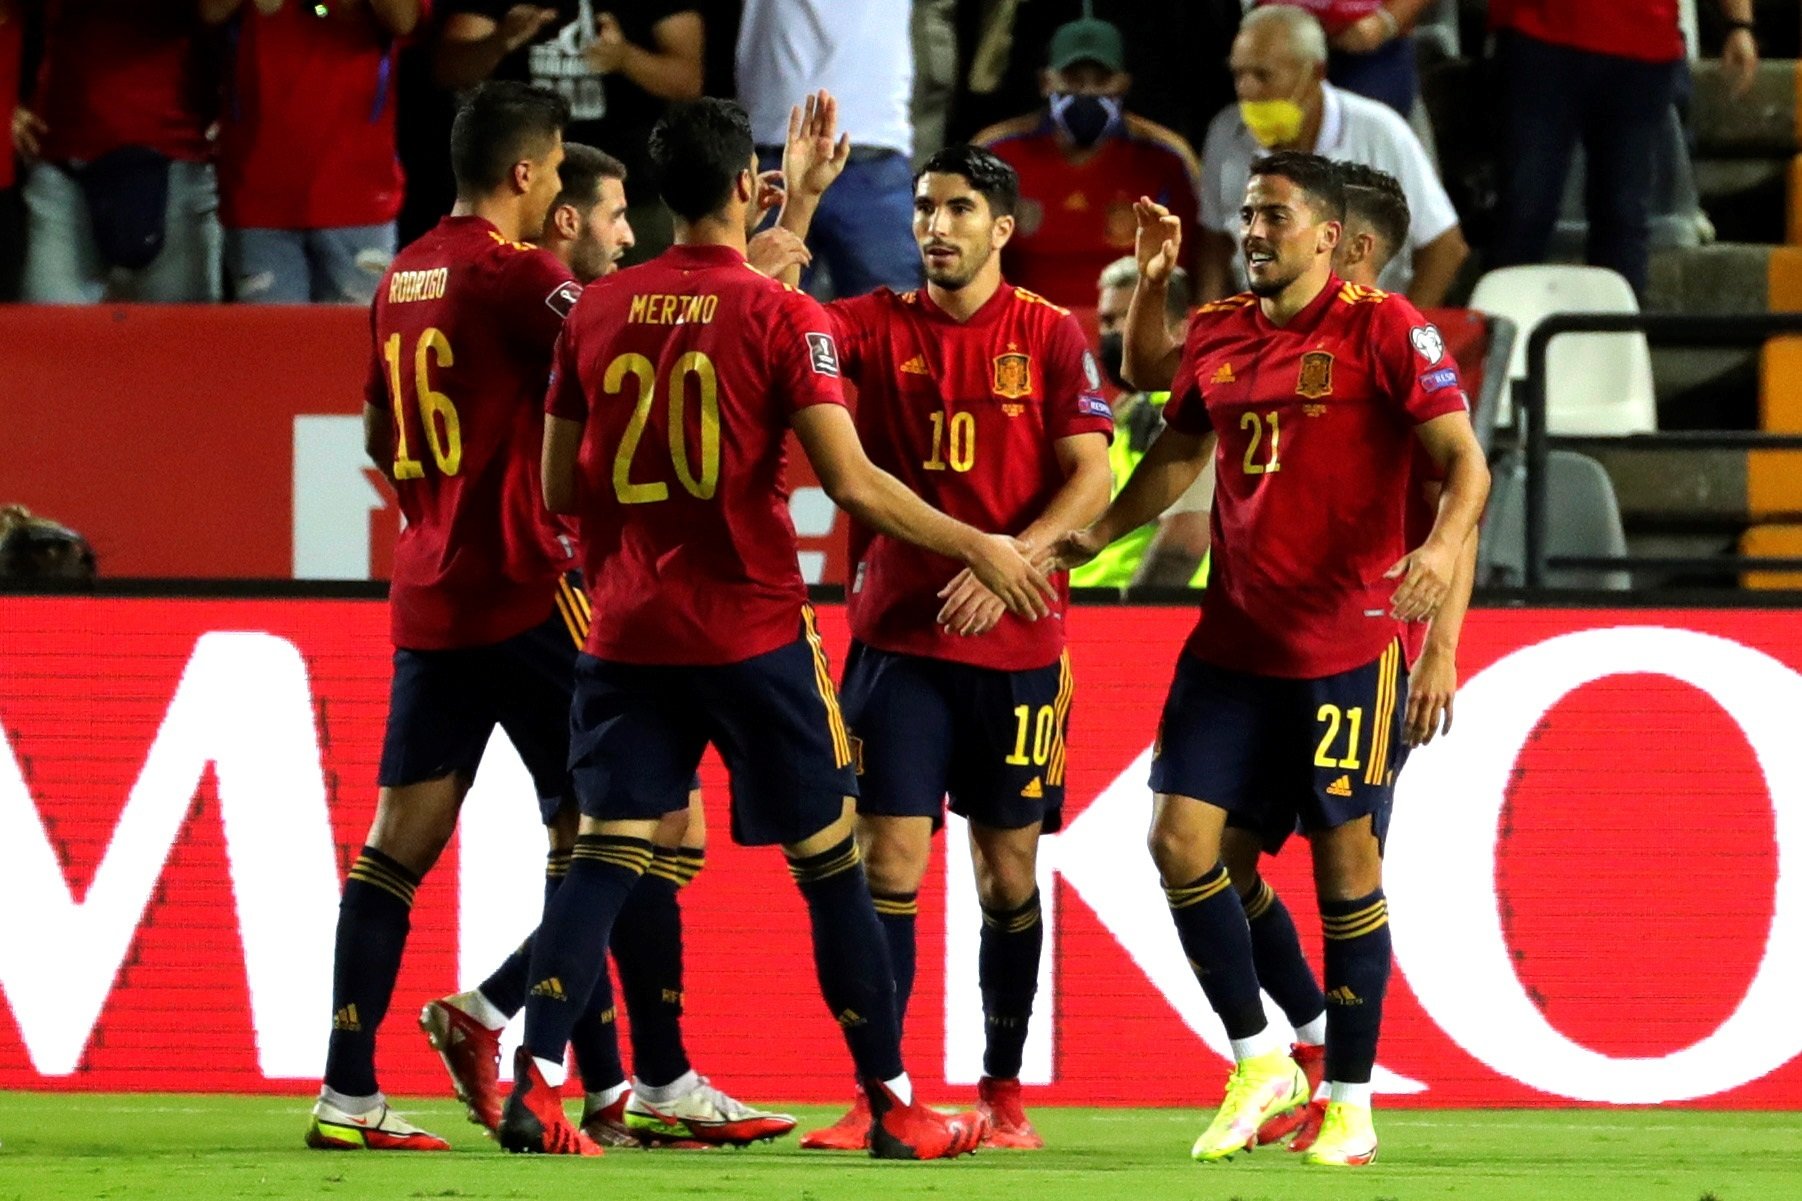 España golea a Georgia en un partido sin historia (4-0) y mete presión a Suecia